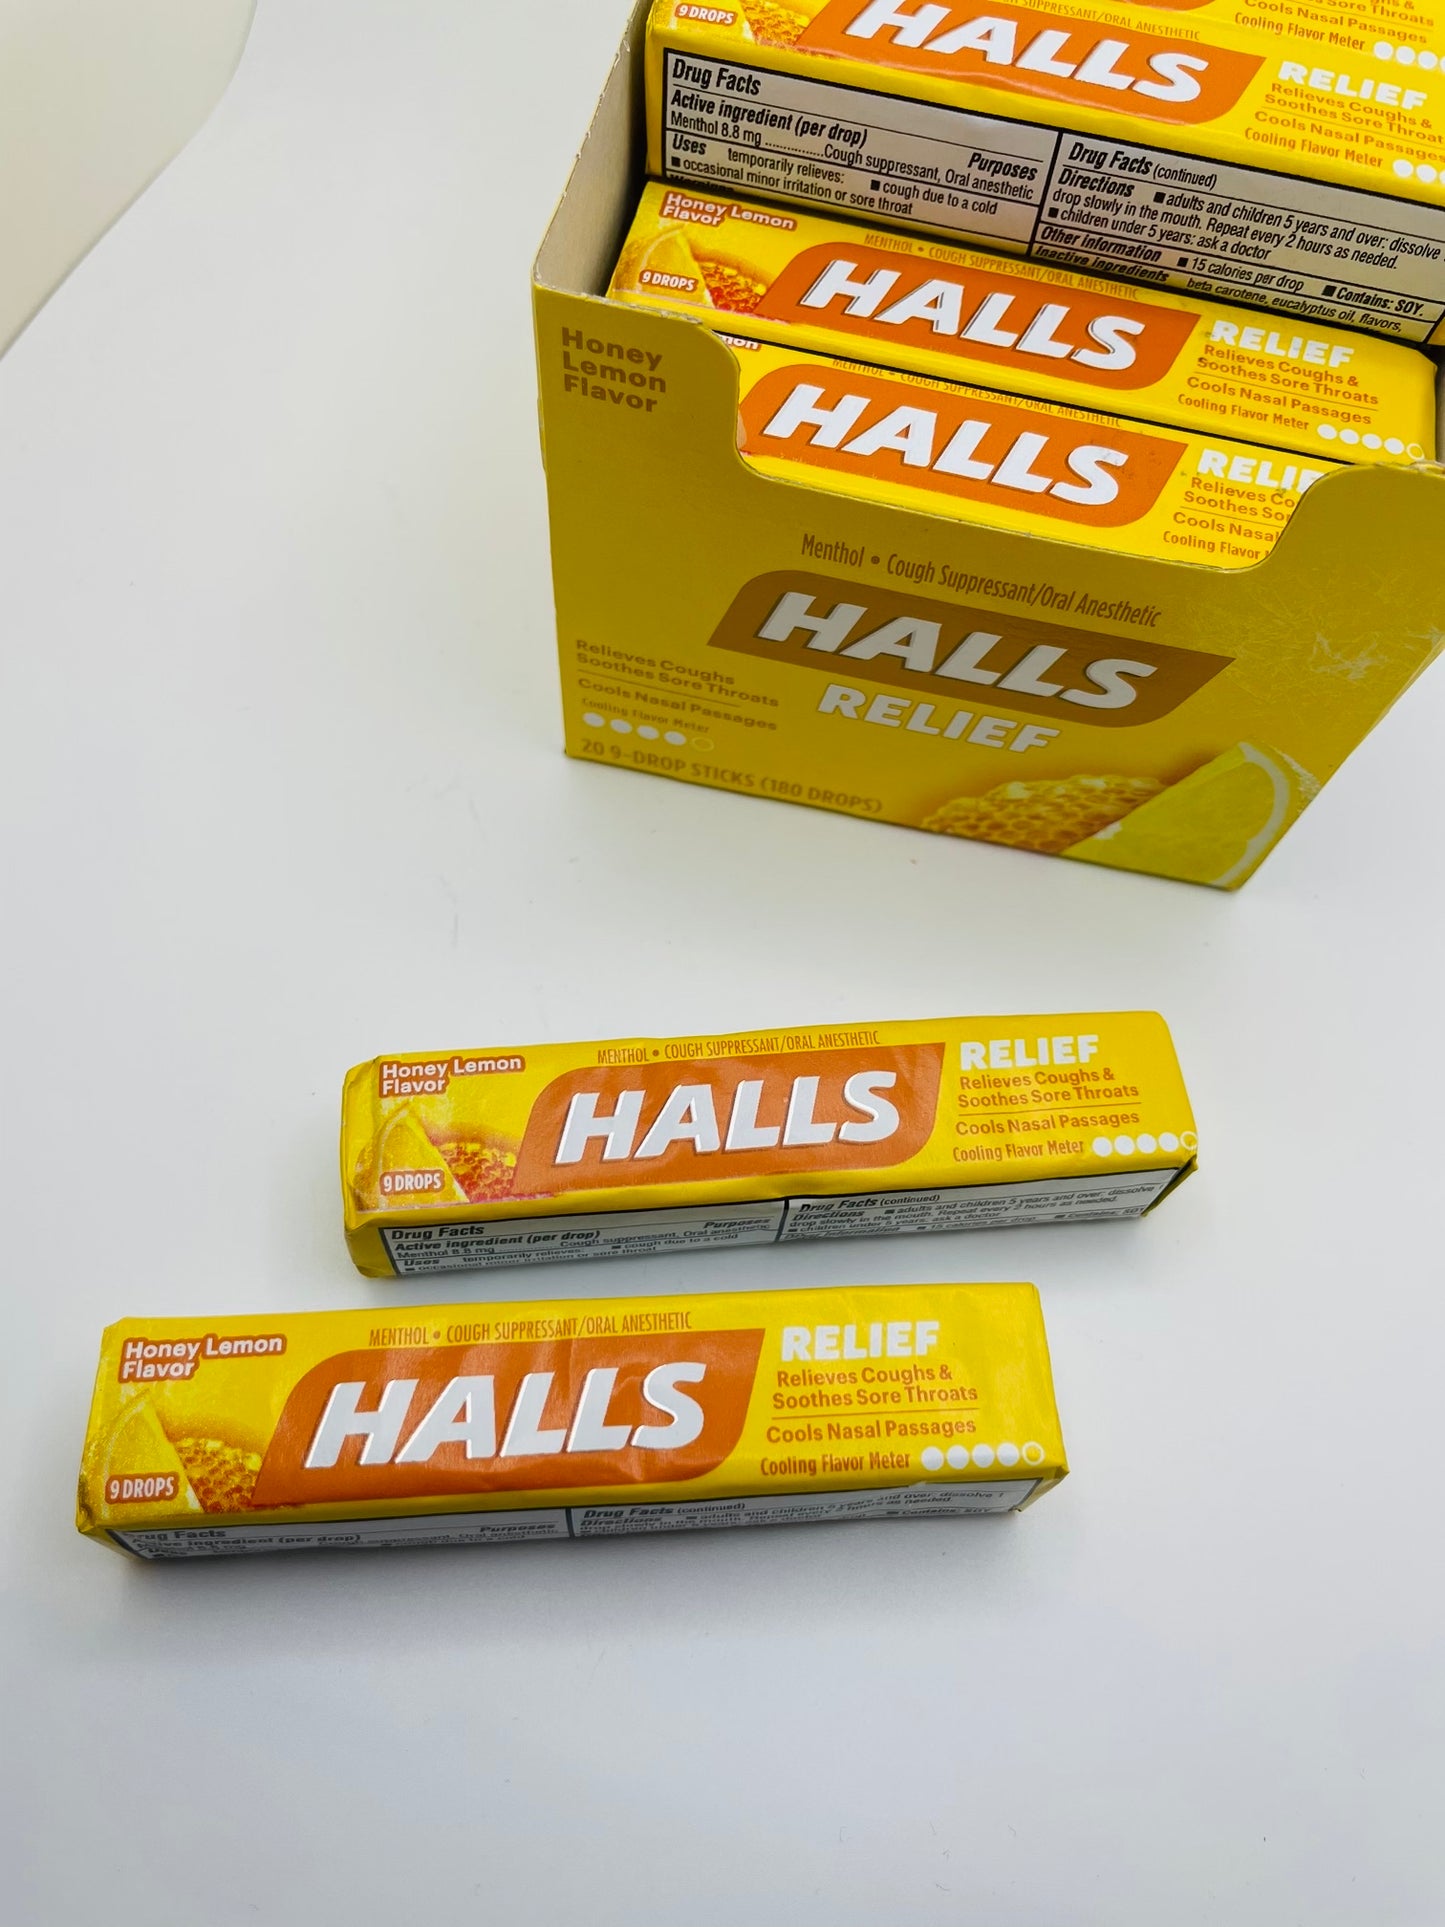 Halls relief